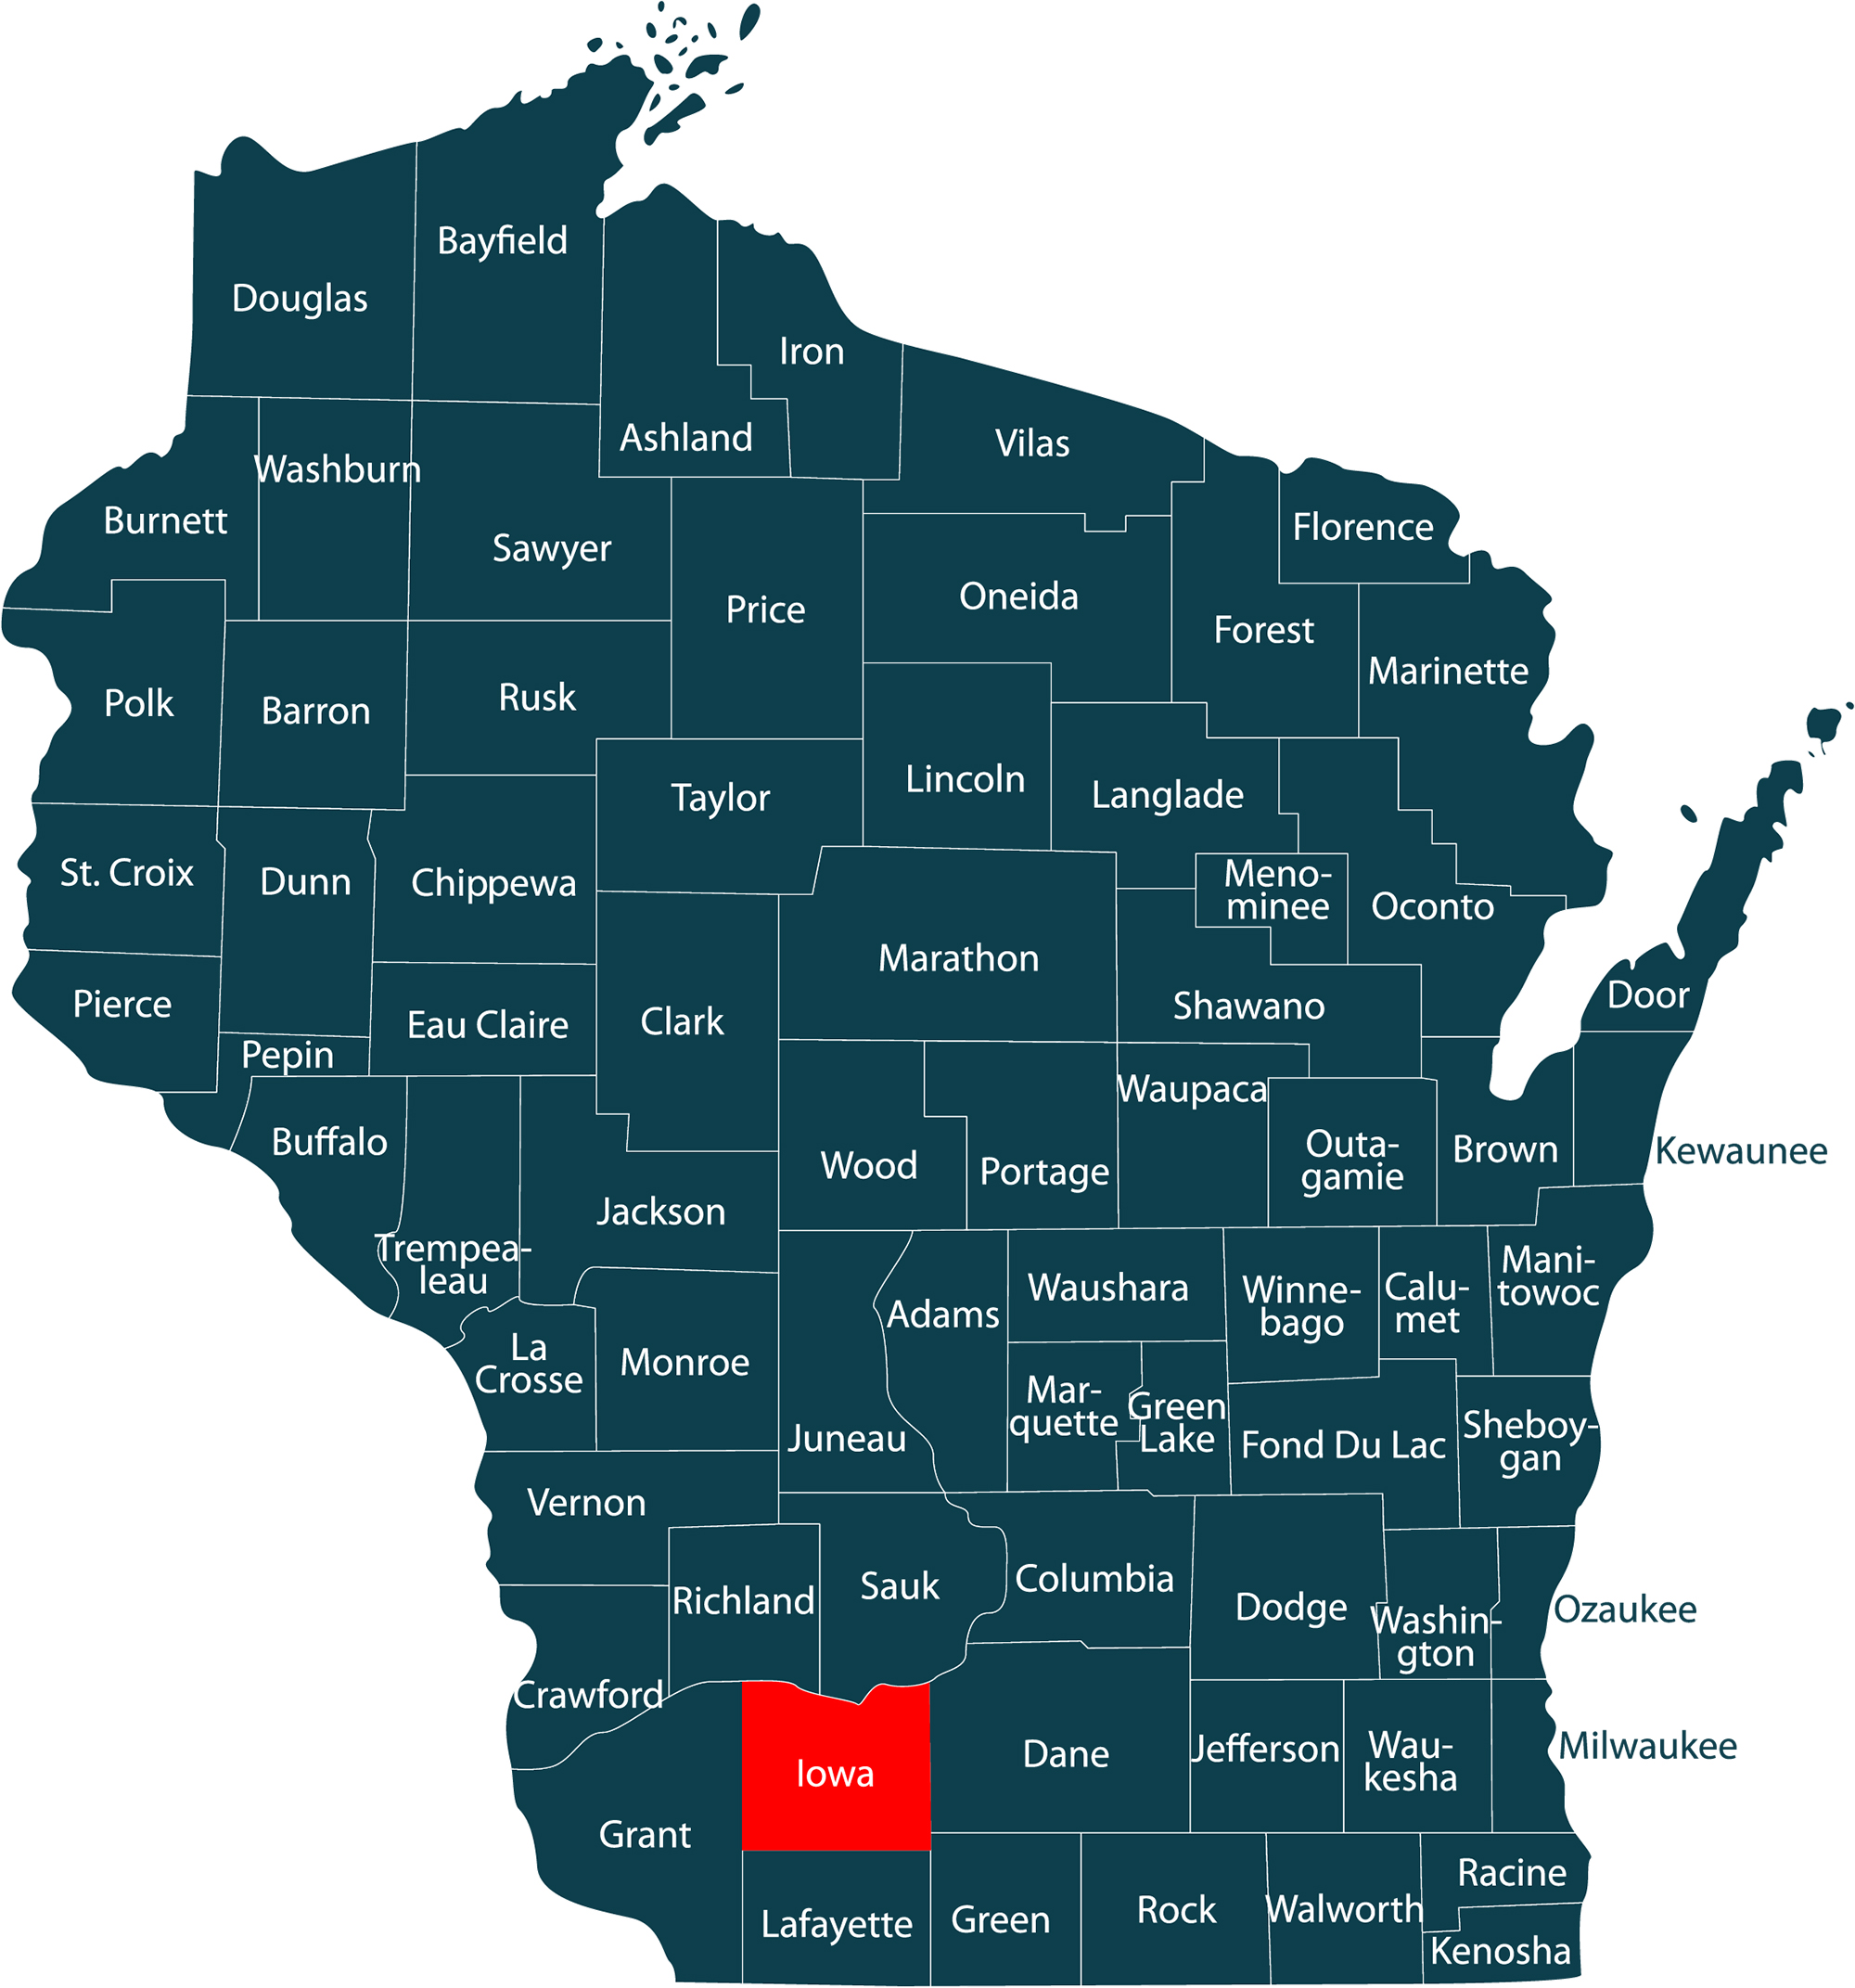 Iowa County Wisconsin @ wisconsin.com